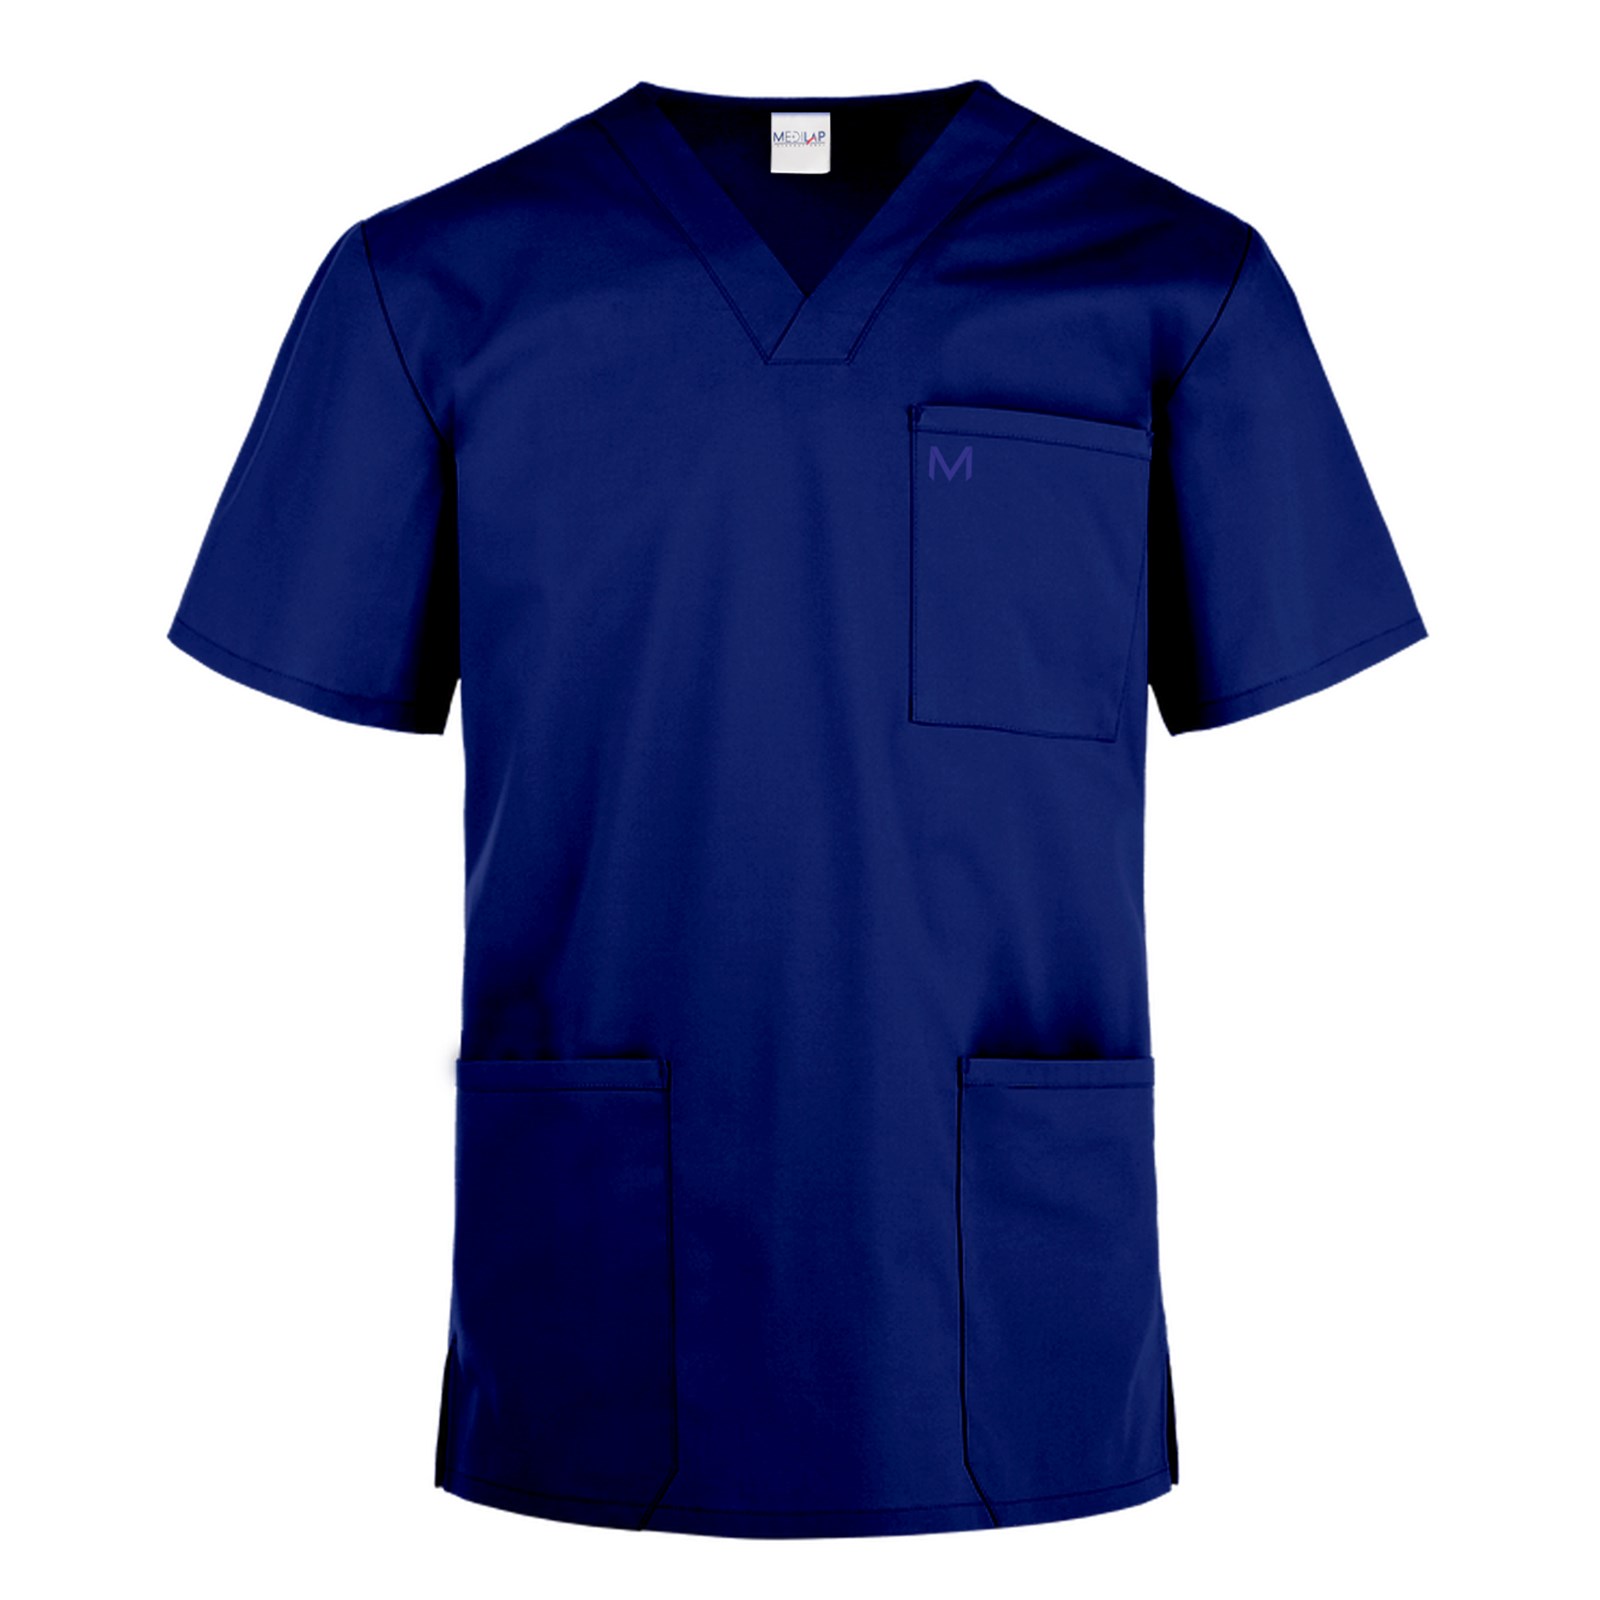 Lucid Medical Scrubs for Men (Navy Blue) - The Medilap